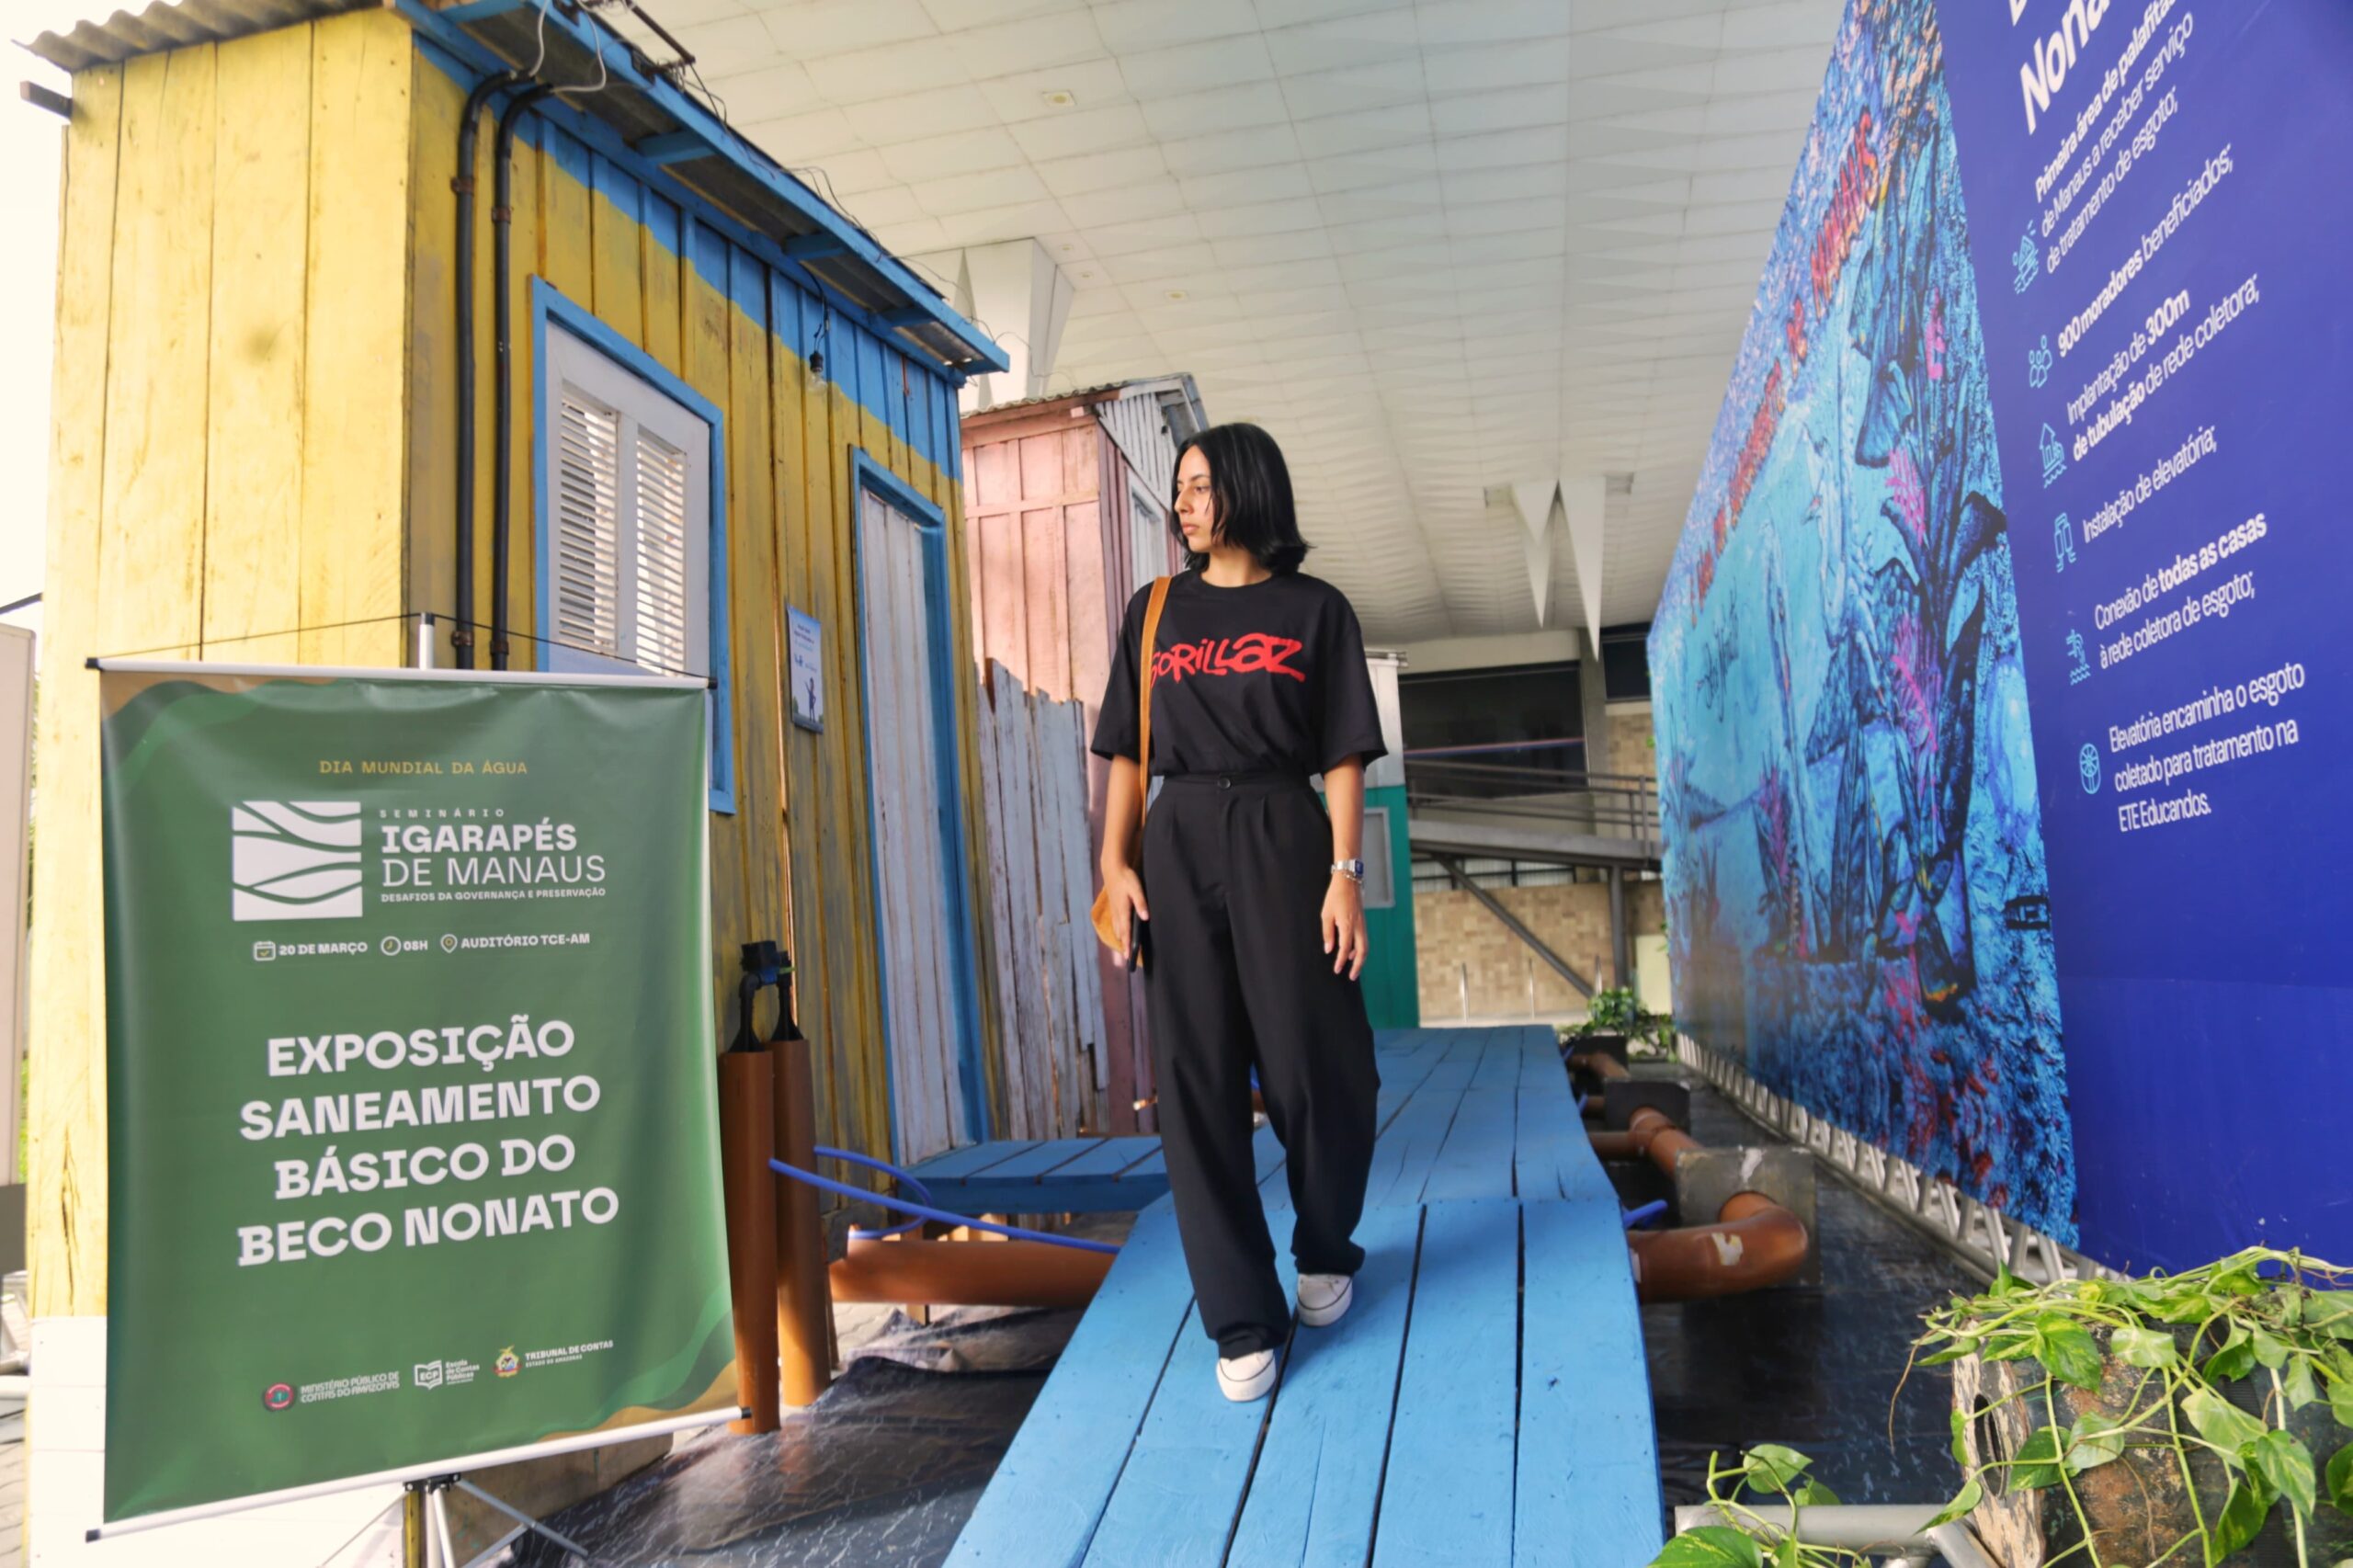 Exposição em tamanho real do Beco Nonato é exibida no TCE-AM em seminário sobre igarapés